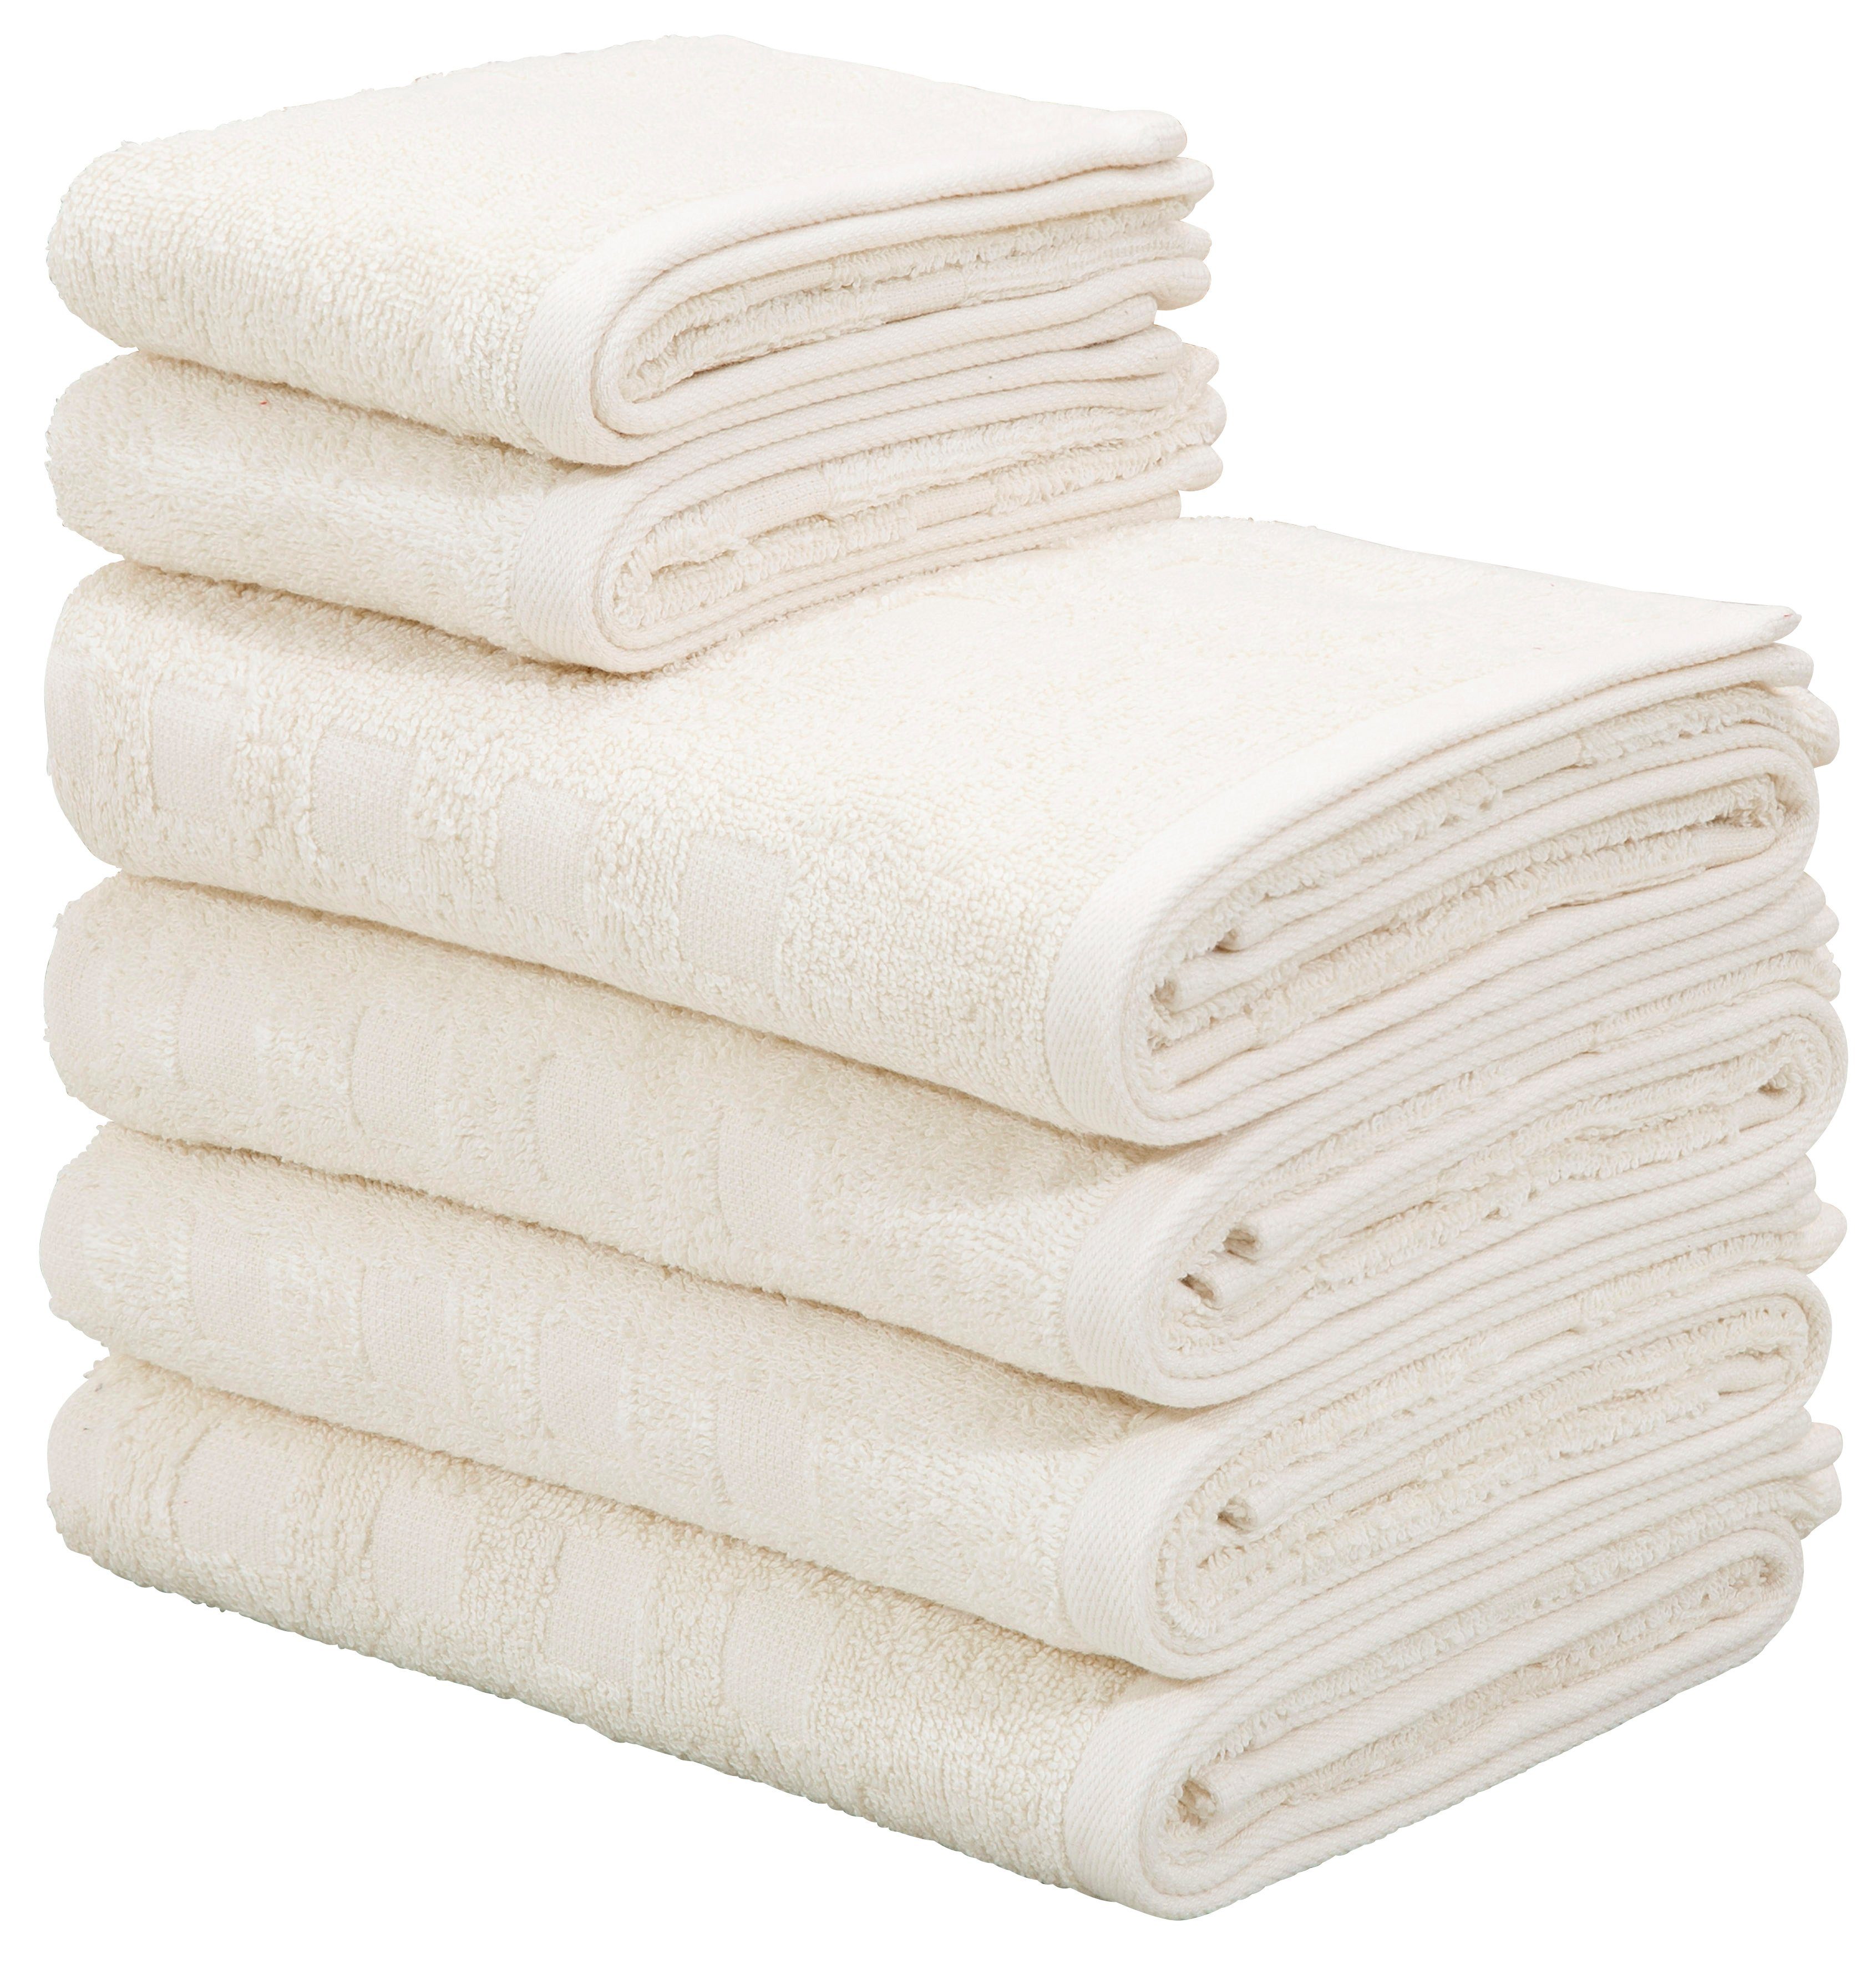 Creme Handtuch-Sets online kaufen | OTTO